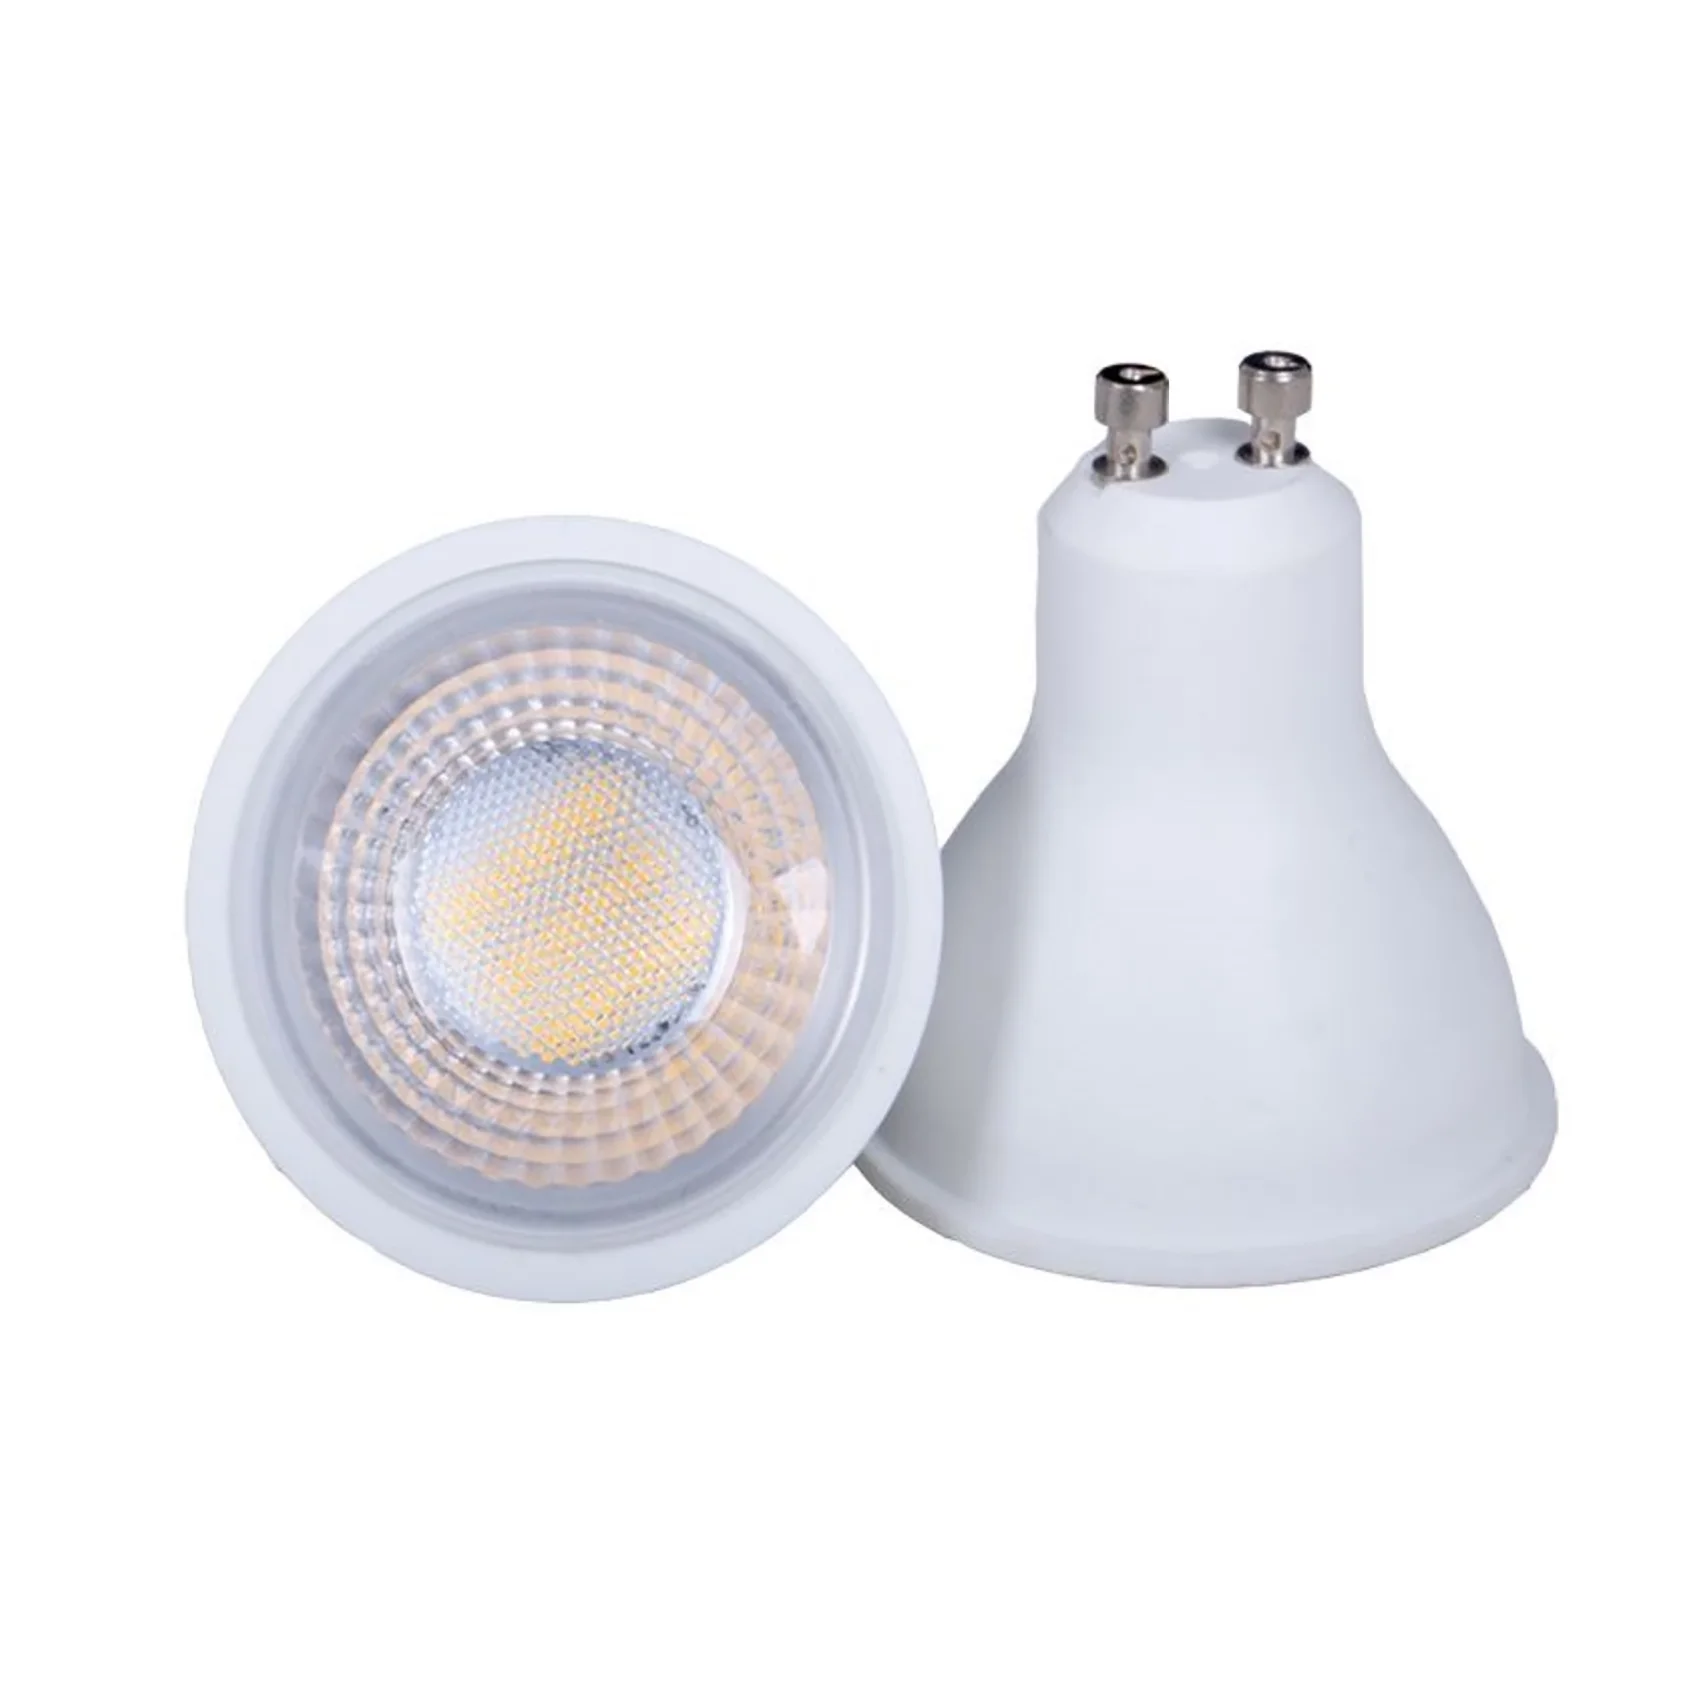 High light transmittance lens gu10 led spotlight lamps 7W 6500k cool white for office home decorating